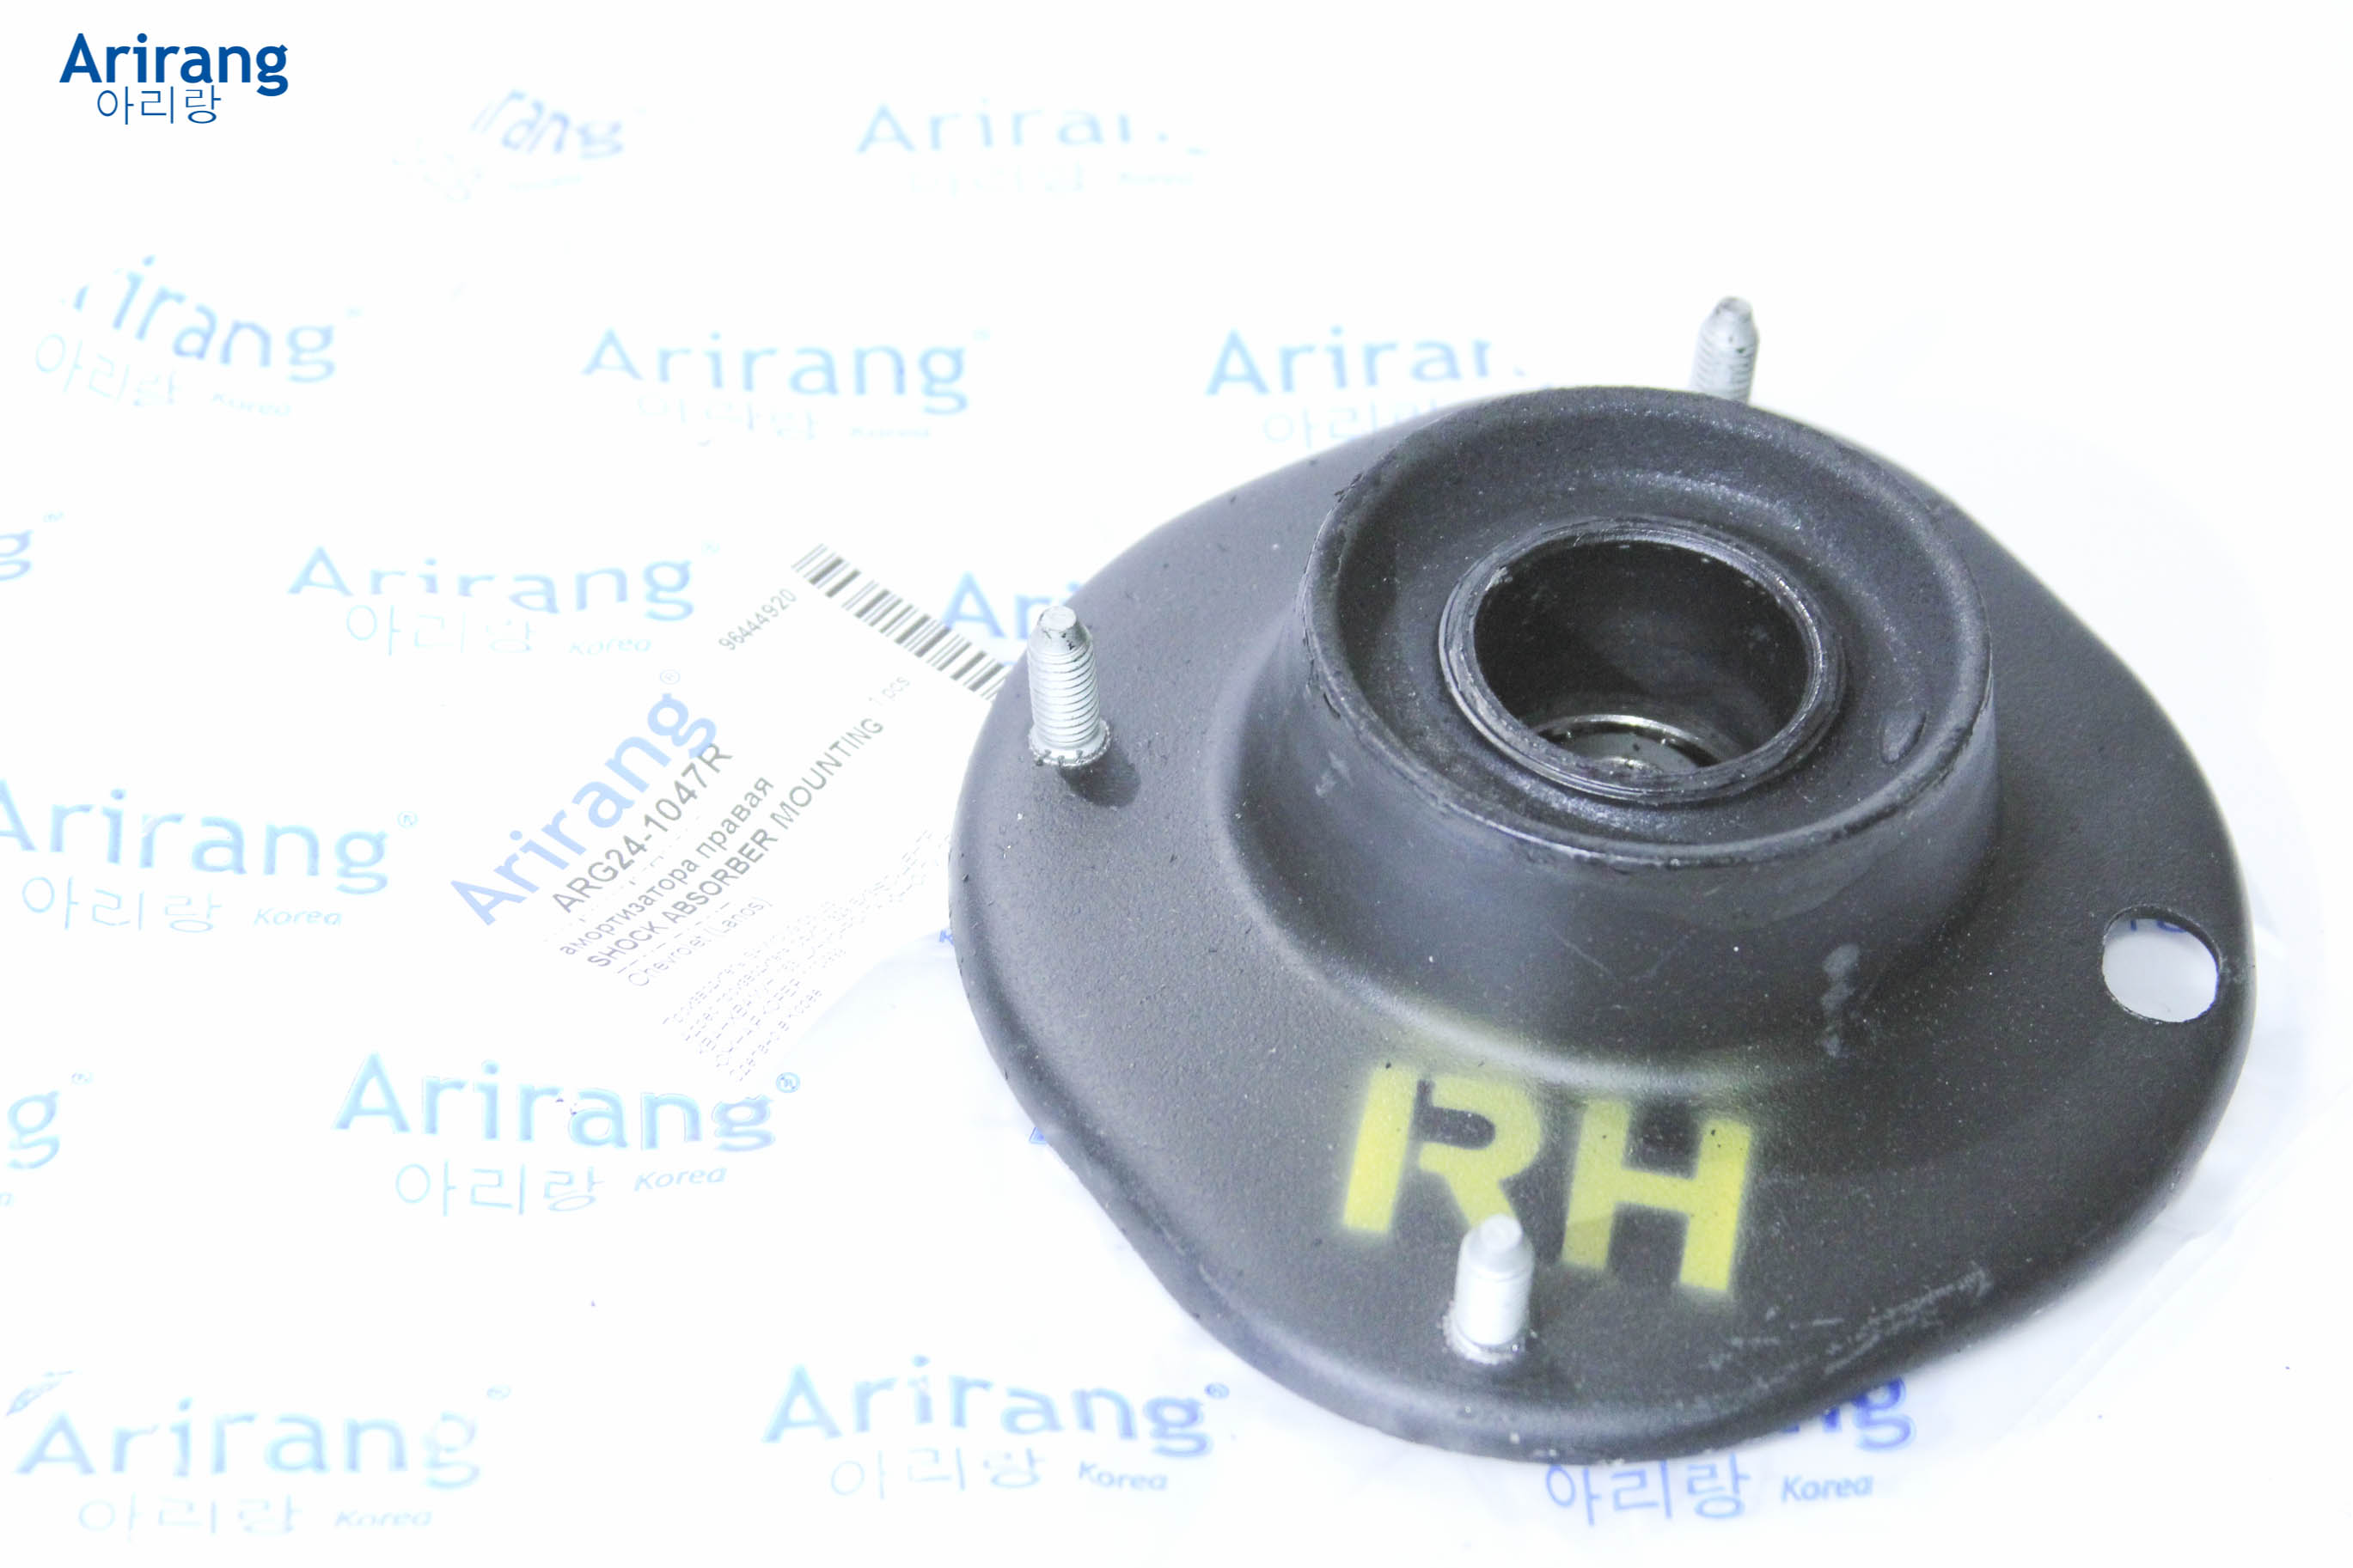 Опора переднего амортизатора правая - Arirang ARG24-1047R